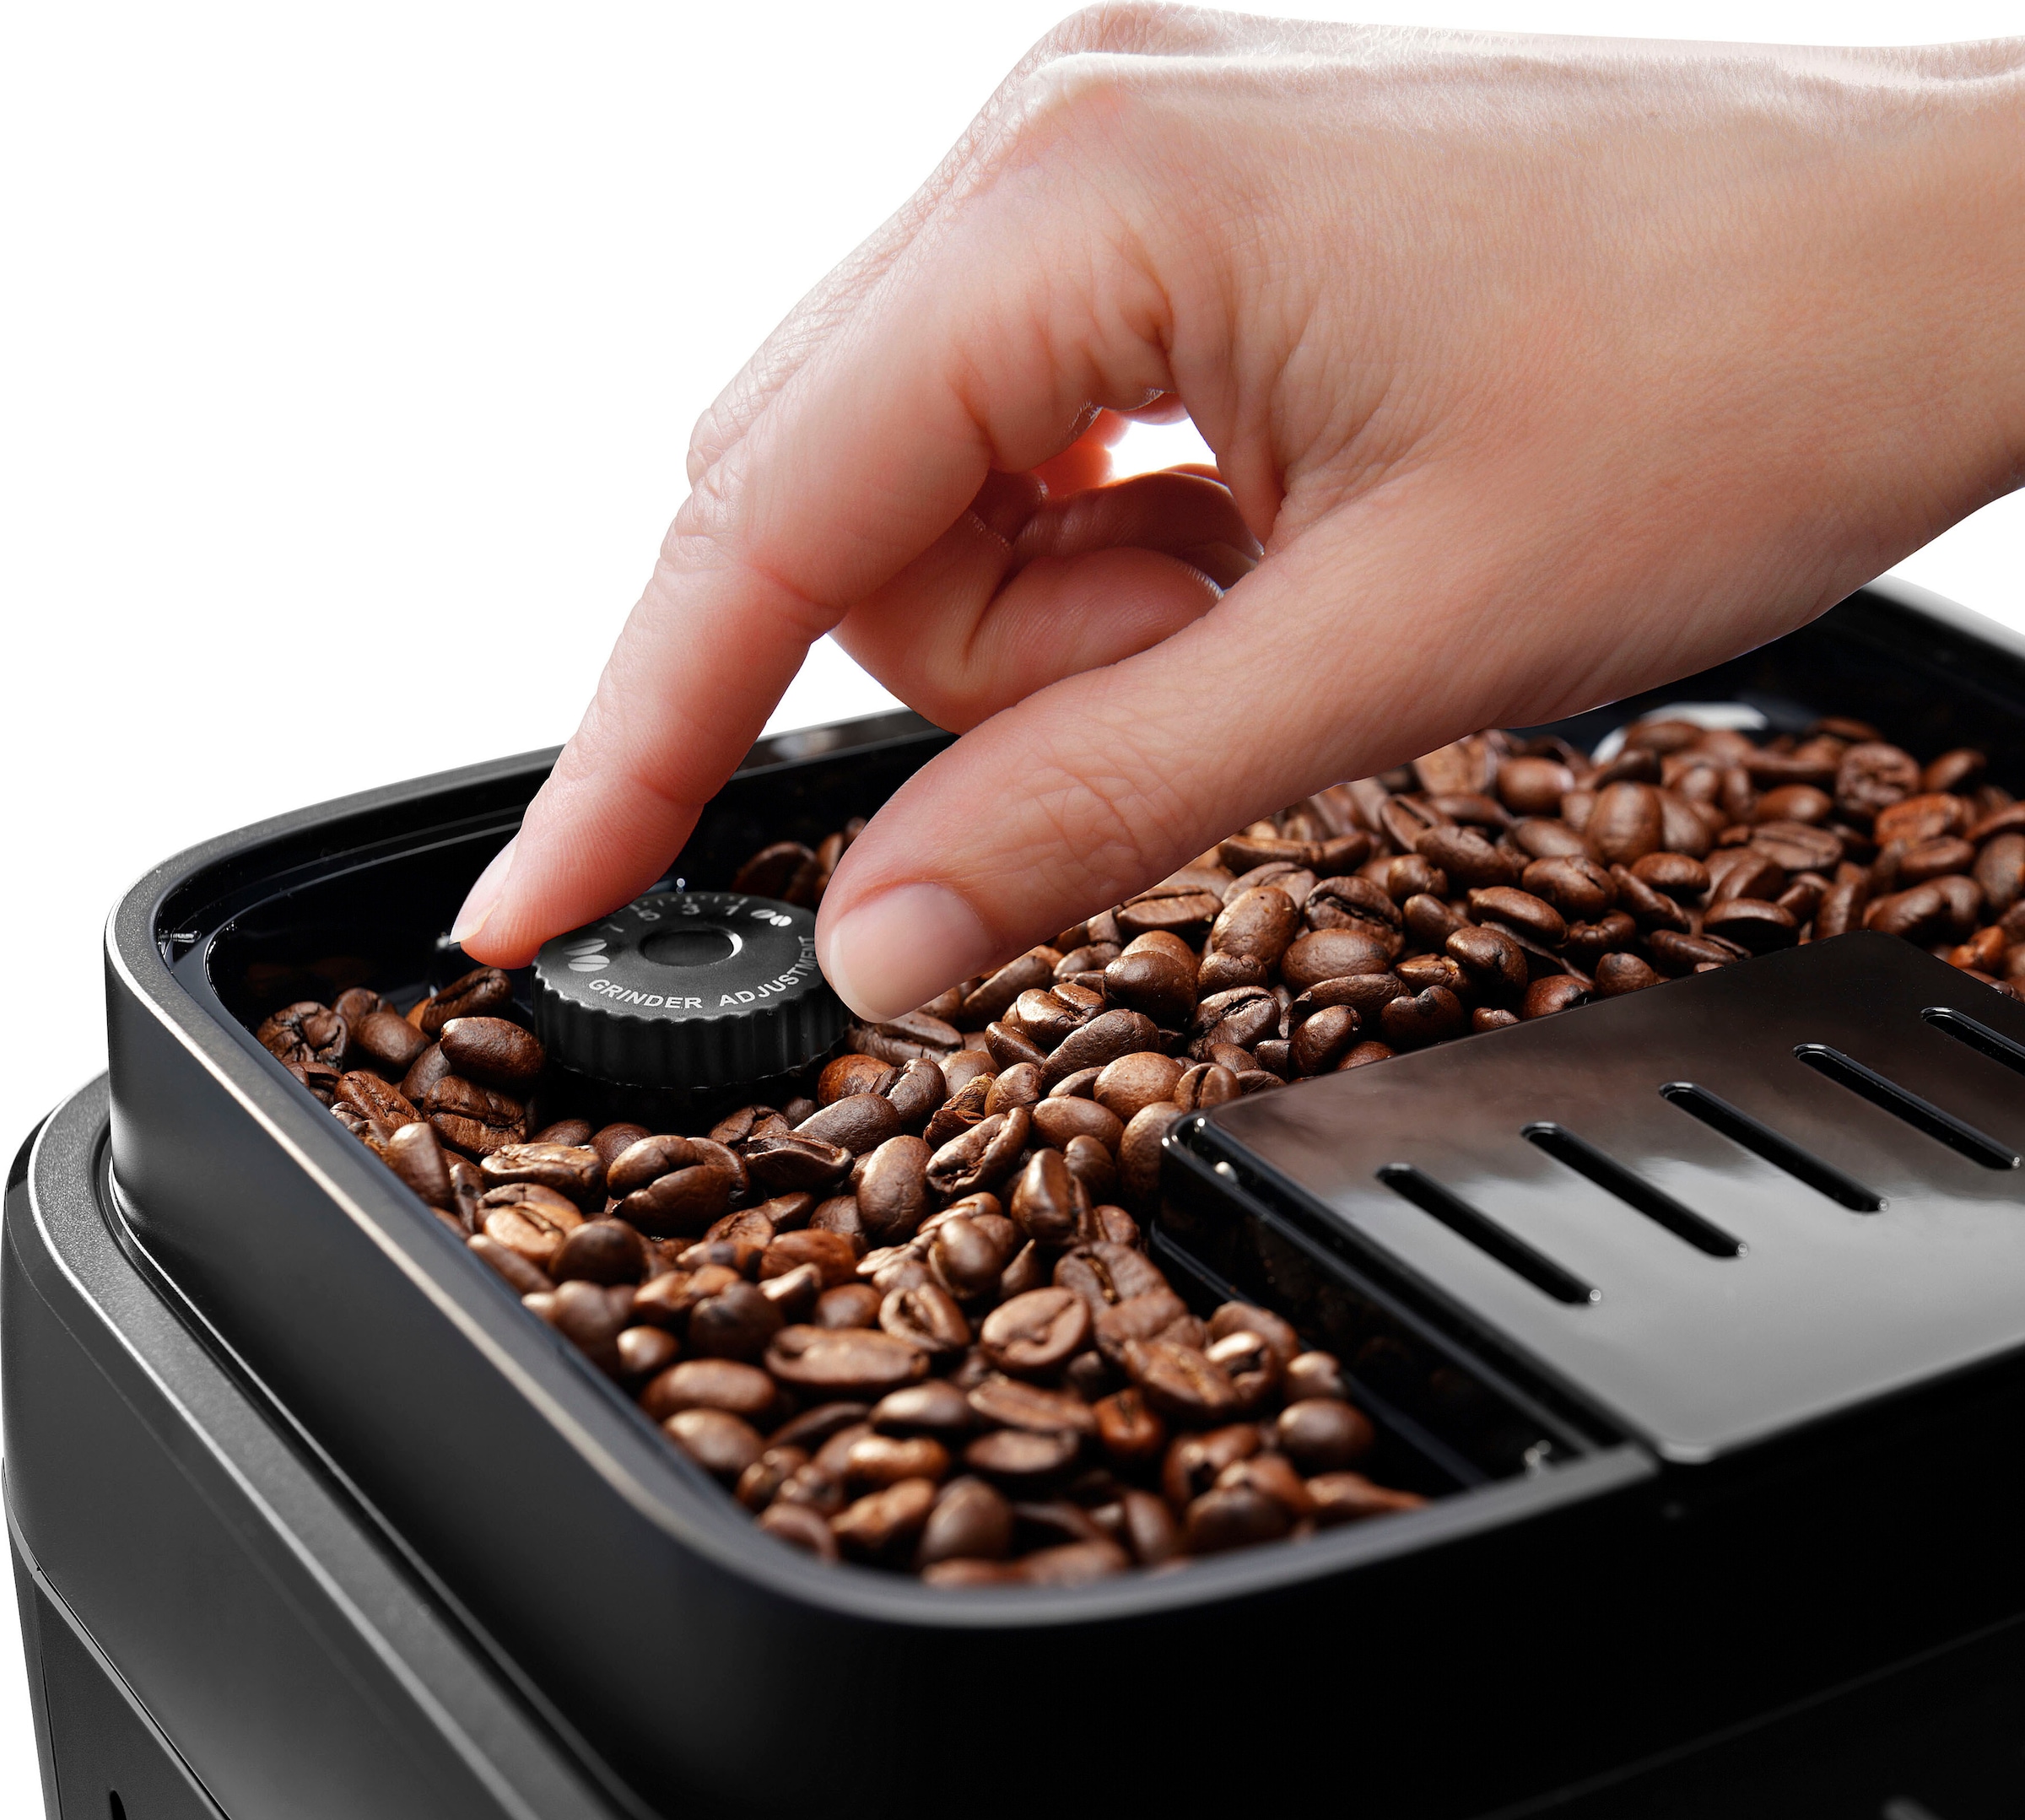 De'Longhi Kaffeevollautomat »Magnifica Evo ECAM290.51.B«, mit LatteCrema Milchsystem, inkl. Pflegeset im Wert von € 31,99 UVP